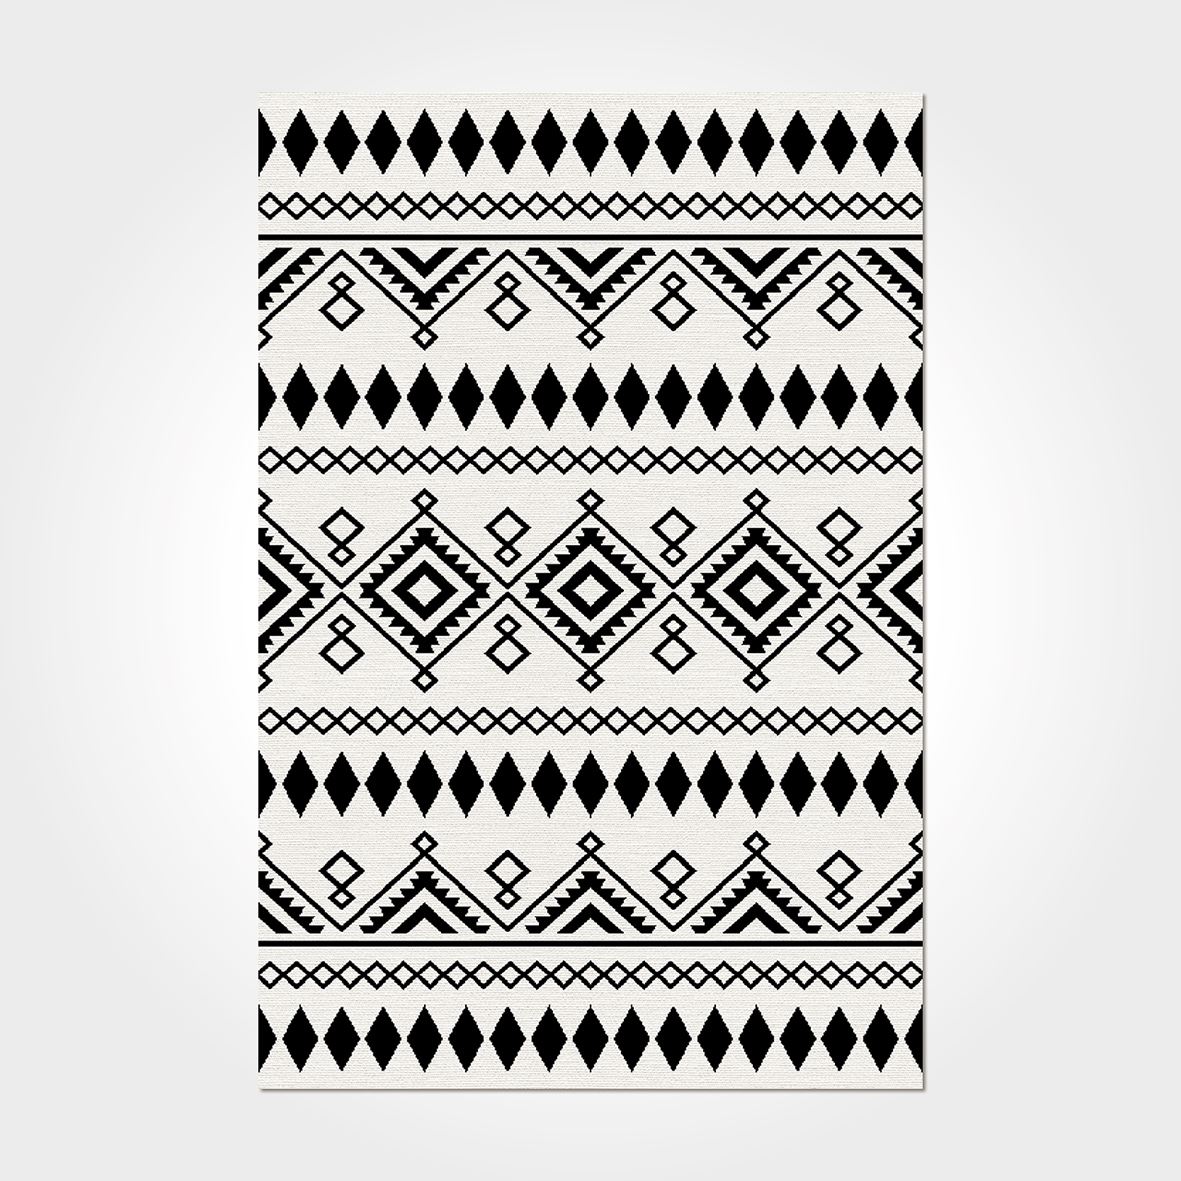 İskandinav Çizgi Desenli Otantik Beyaz - Siyah Renkli Baskılı Kilim - DKB3048